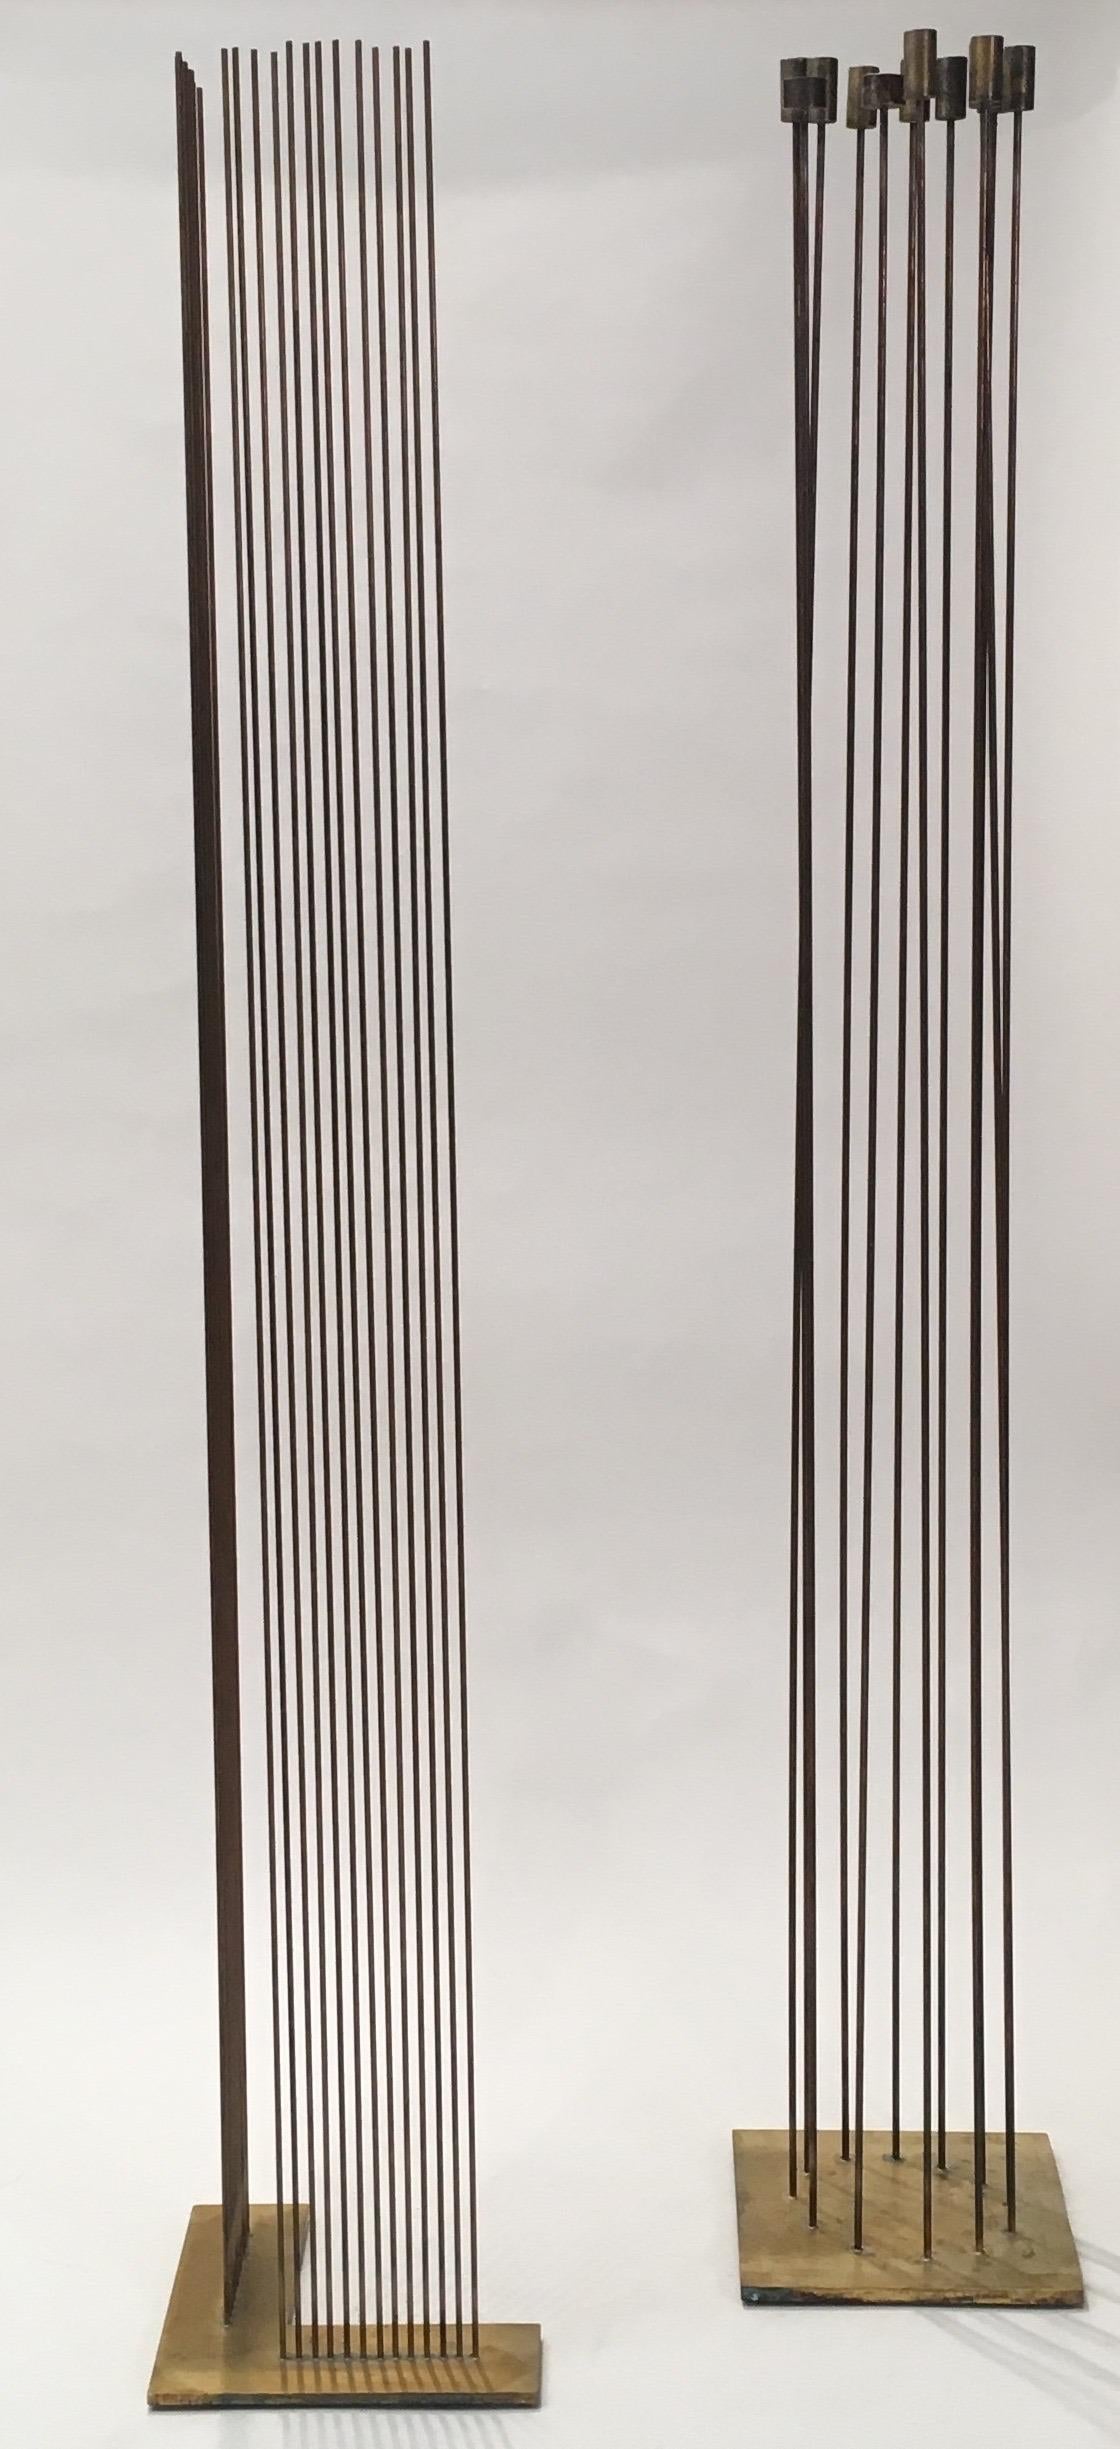 La paire de sculptures sonores de l'artiste contemporain Val Bertoia, réalisées en 2012, fait partie de la série Bertoia Sonambient. La pièce en cercle complet est composée de 10 plateaux en laiton et de 2 plateaux en bronze argentés sur des tiges